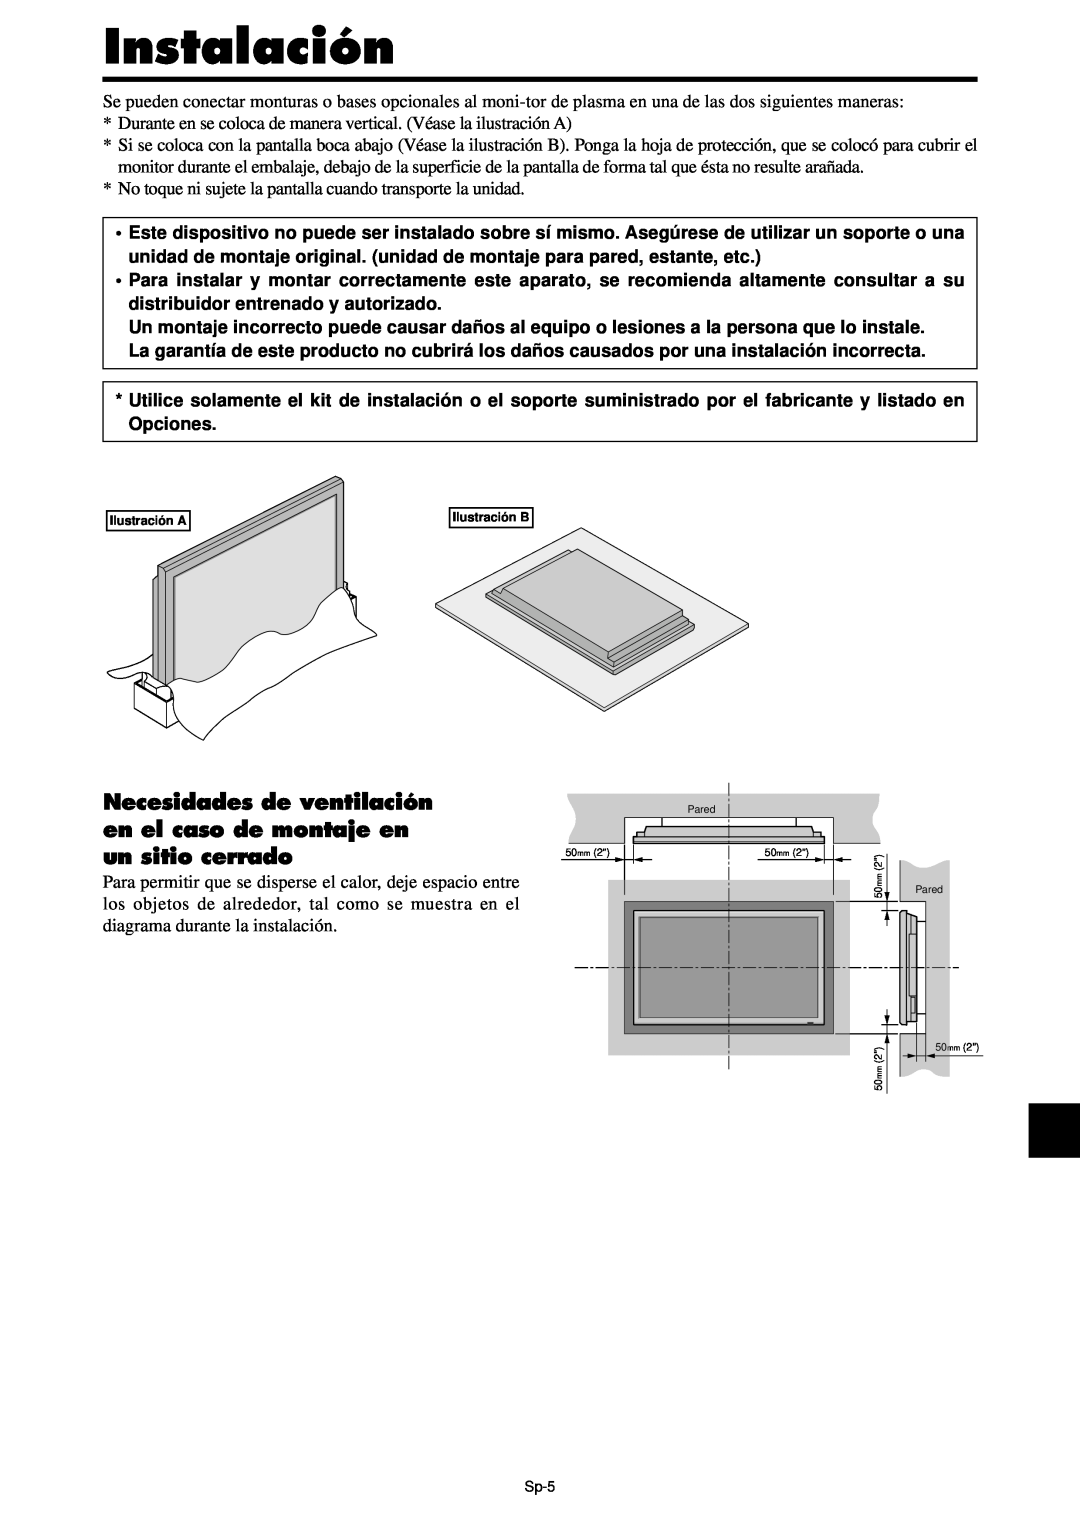 NEC PX-42XM4A, PX-61XM4A manual Instalación, Necesidades de ventilación en el caso de montaje en, un sitio cerrado 